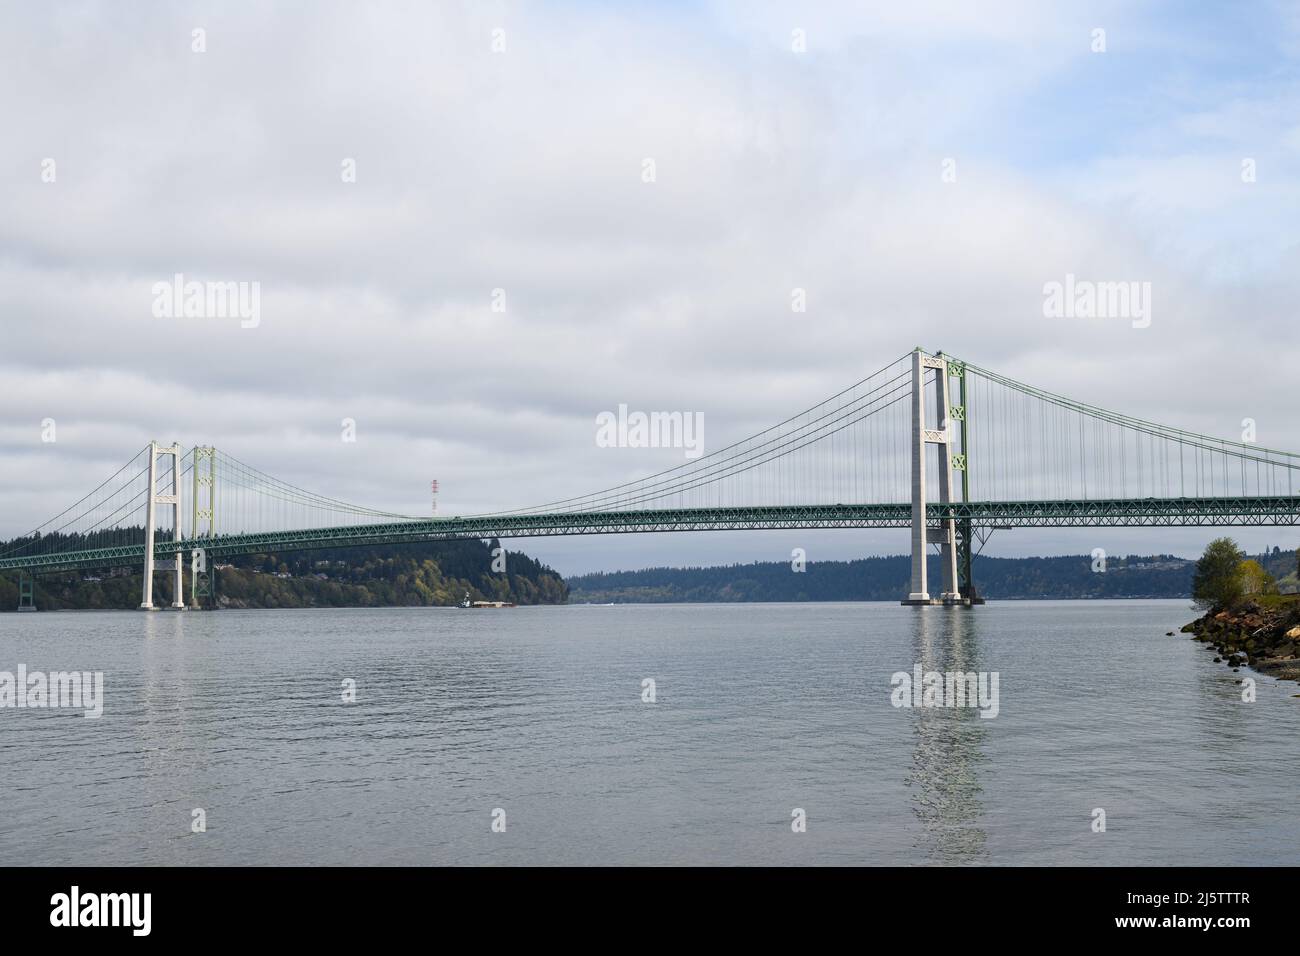 Puente Tacoma Narrows que cruza el agua sobre los Narrows y conecta Tacoma con el puerto Gig en el condado de Pierce Foto de stock